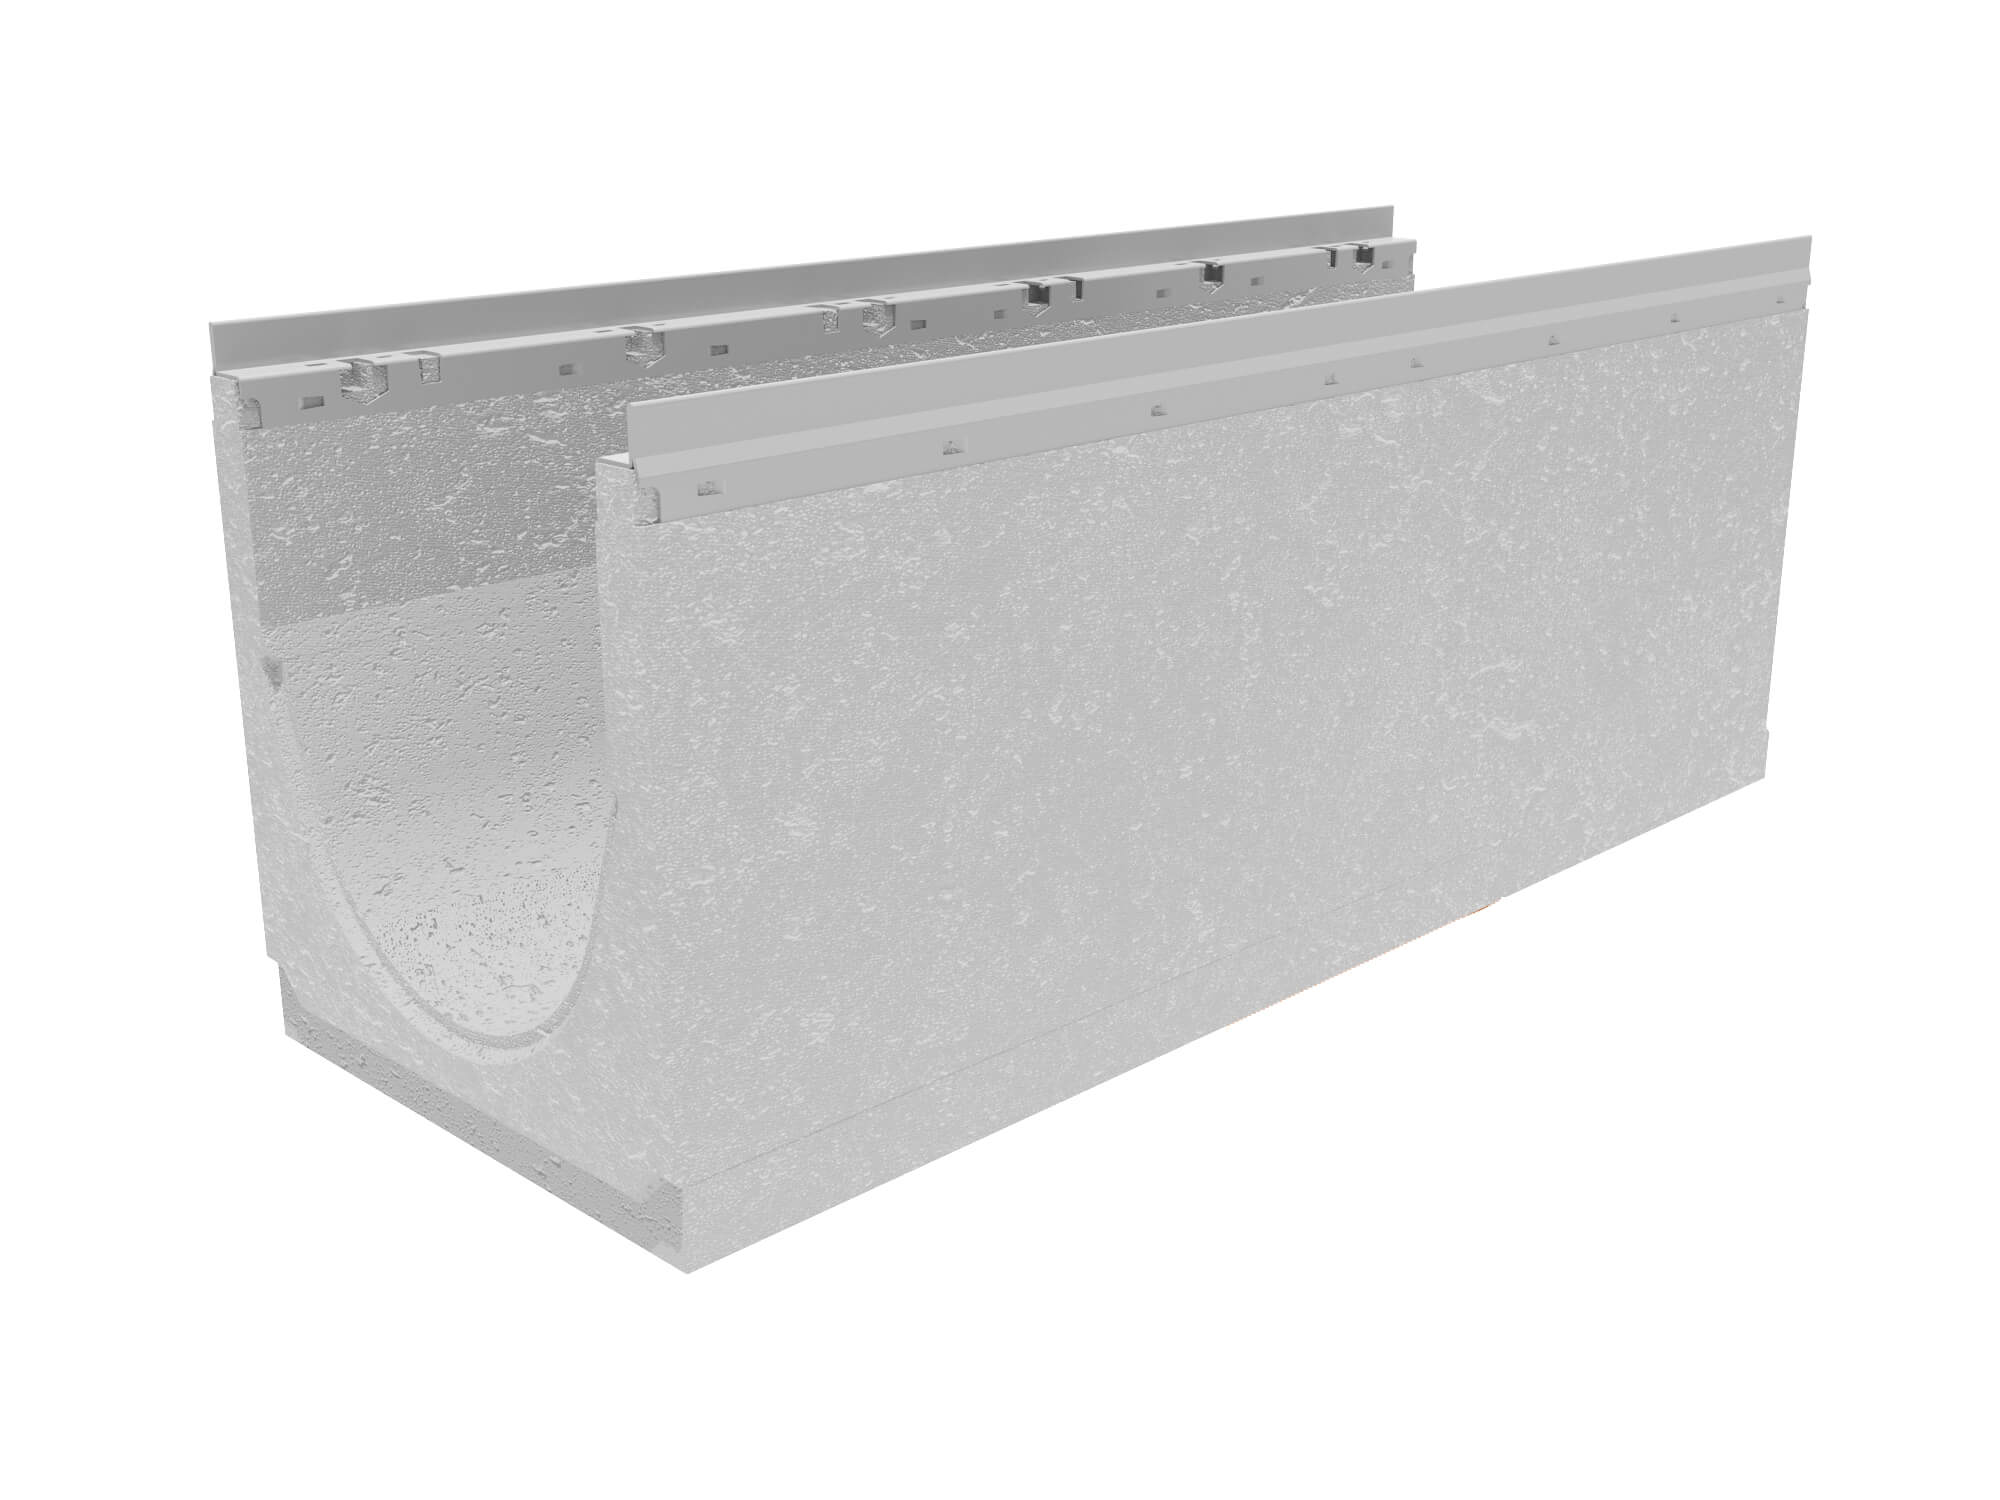 Лоток водоотводный бетонный коробчатый (СО-300мм), с оцинкованной насадкой КU 100.36,3(30).39,5(33) - BGU-Z, № 20-0